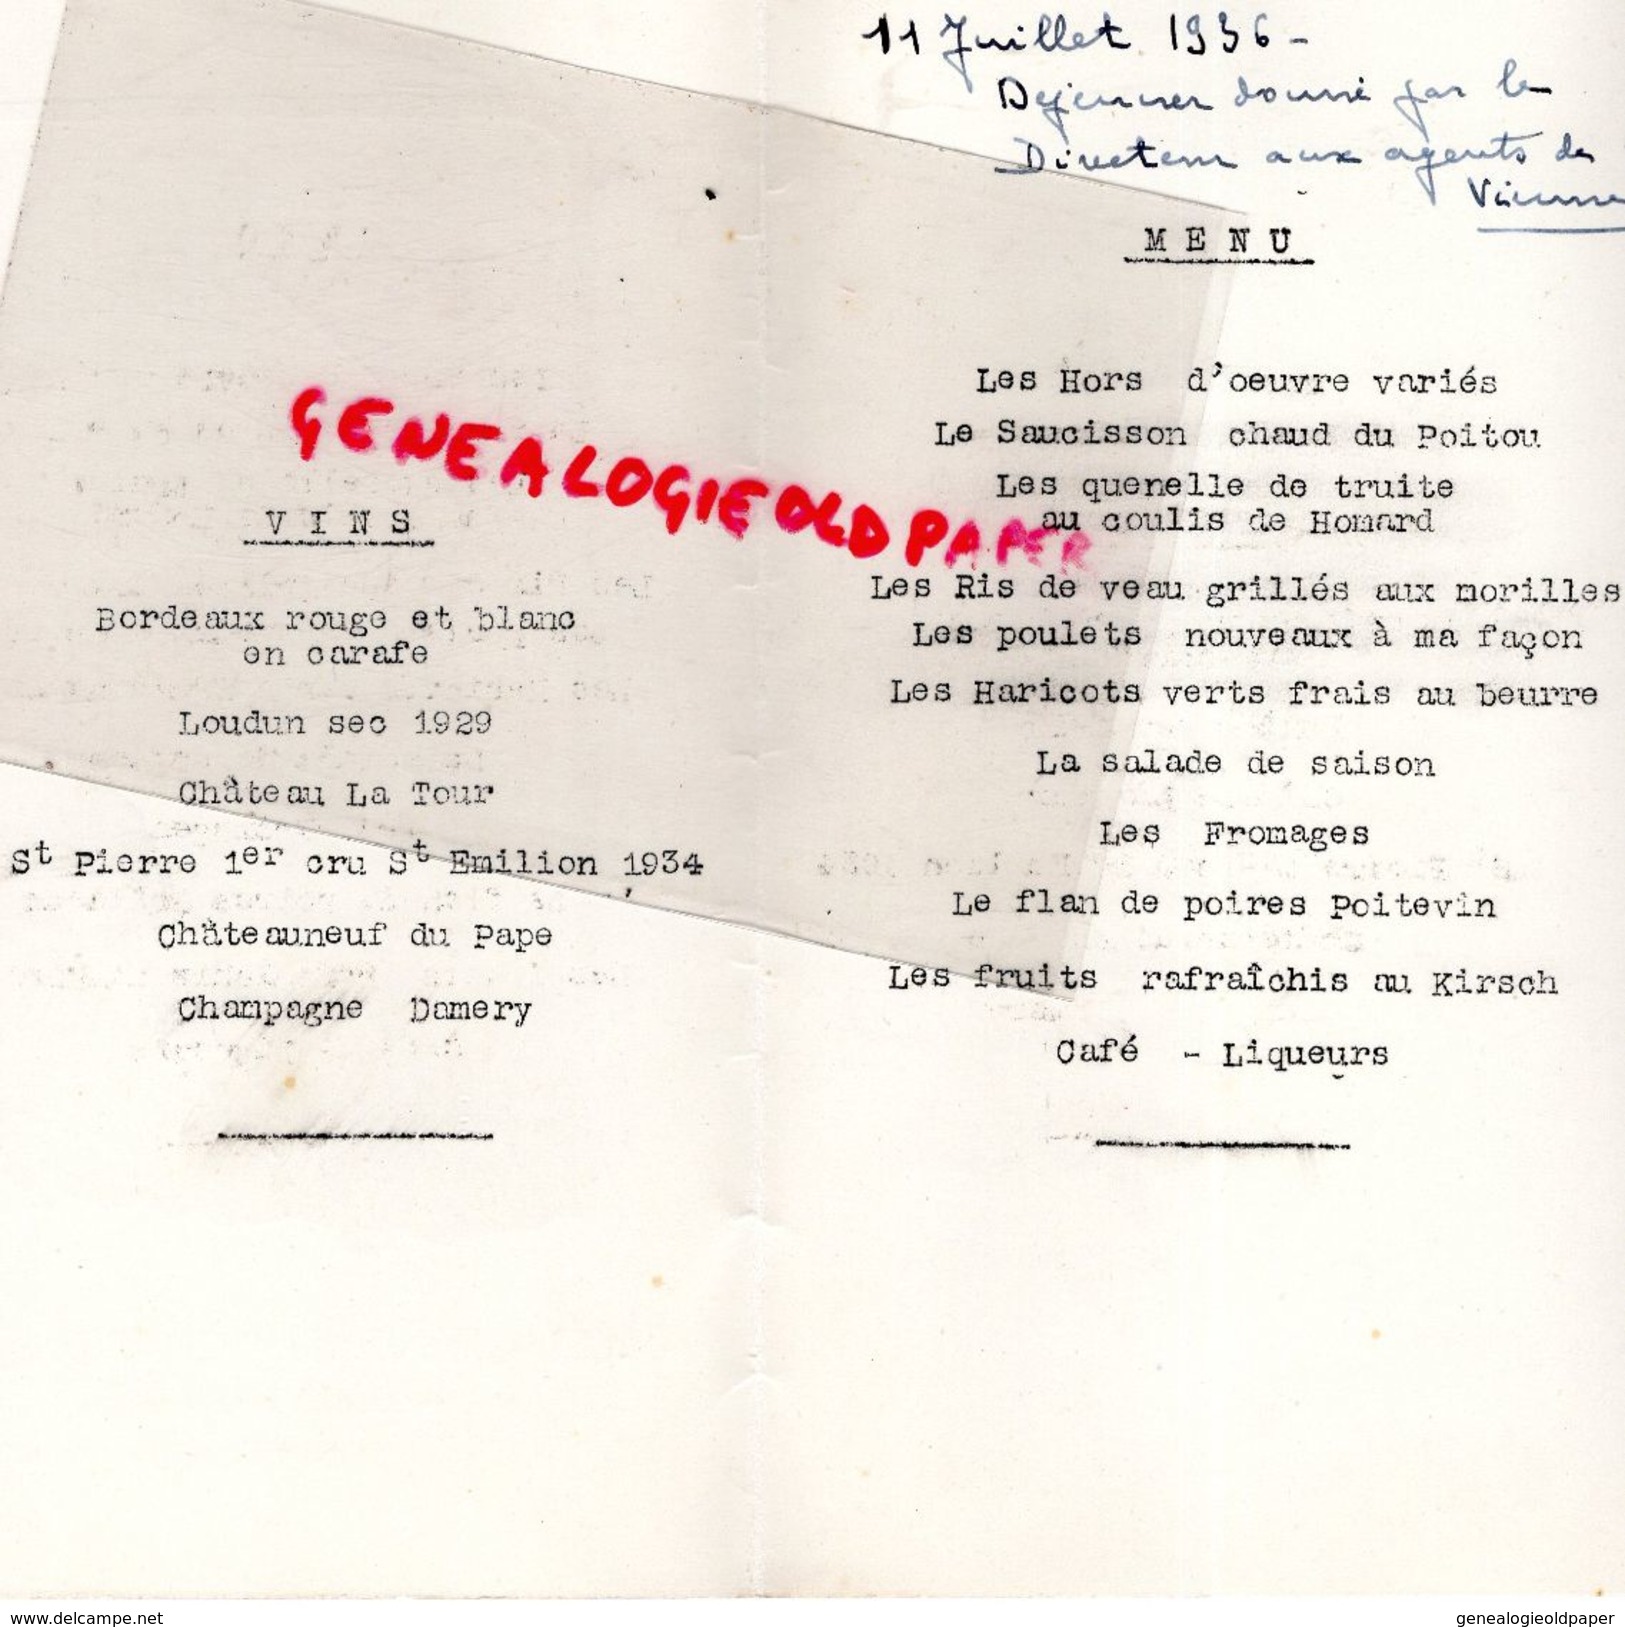 86- POITIERS- RARE MENU RESTAURANT DU CHAPON FIN-PLACE D' ARMES-11 JUILLET 1936-DIRECTEUR AUX AGENTS DE LA VIENNE - Menus